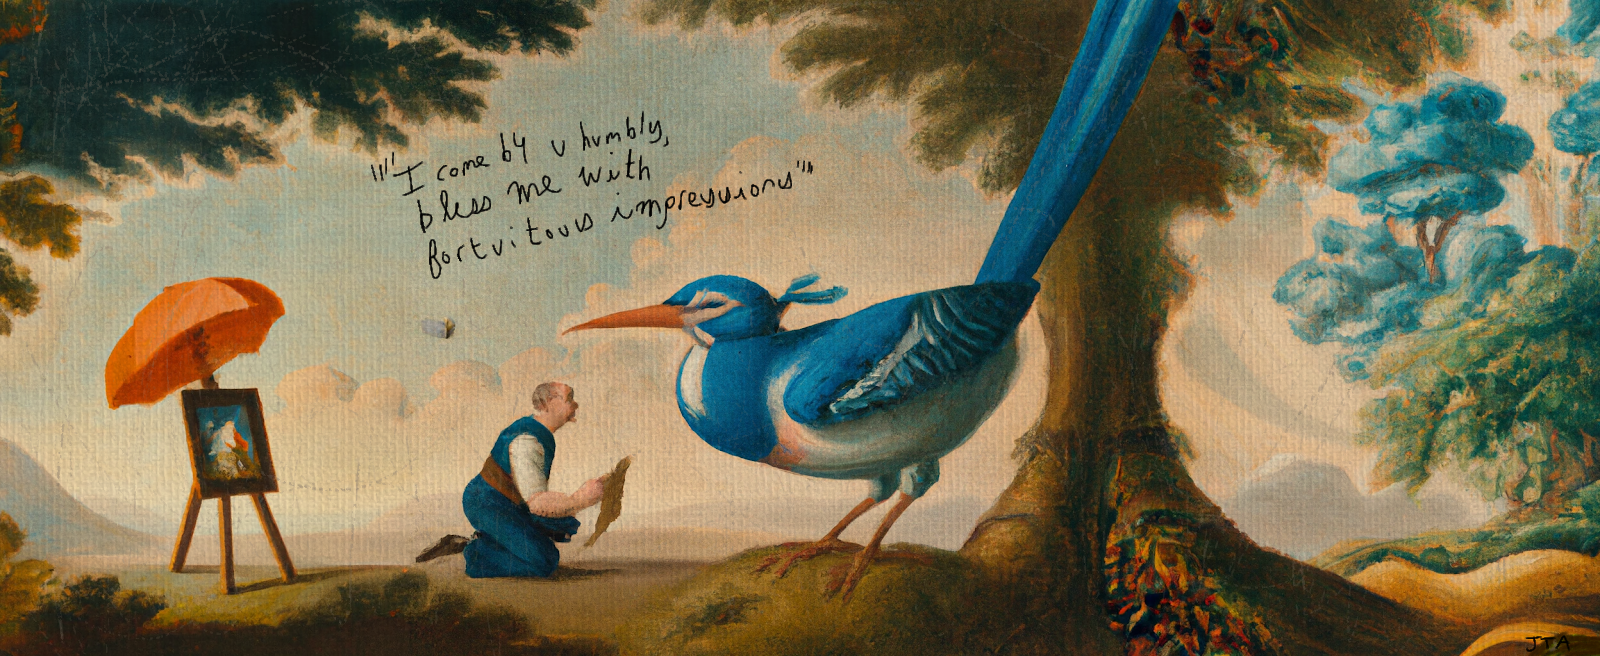 man talking to blue bird